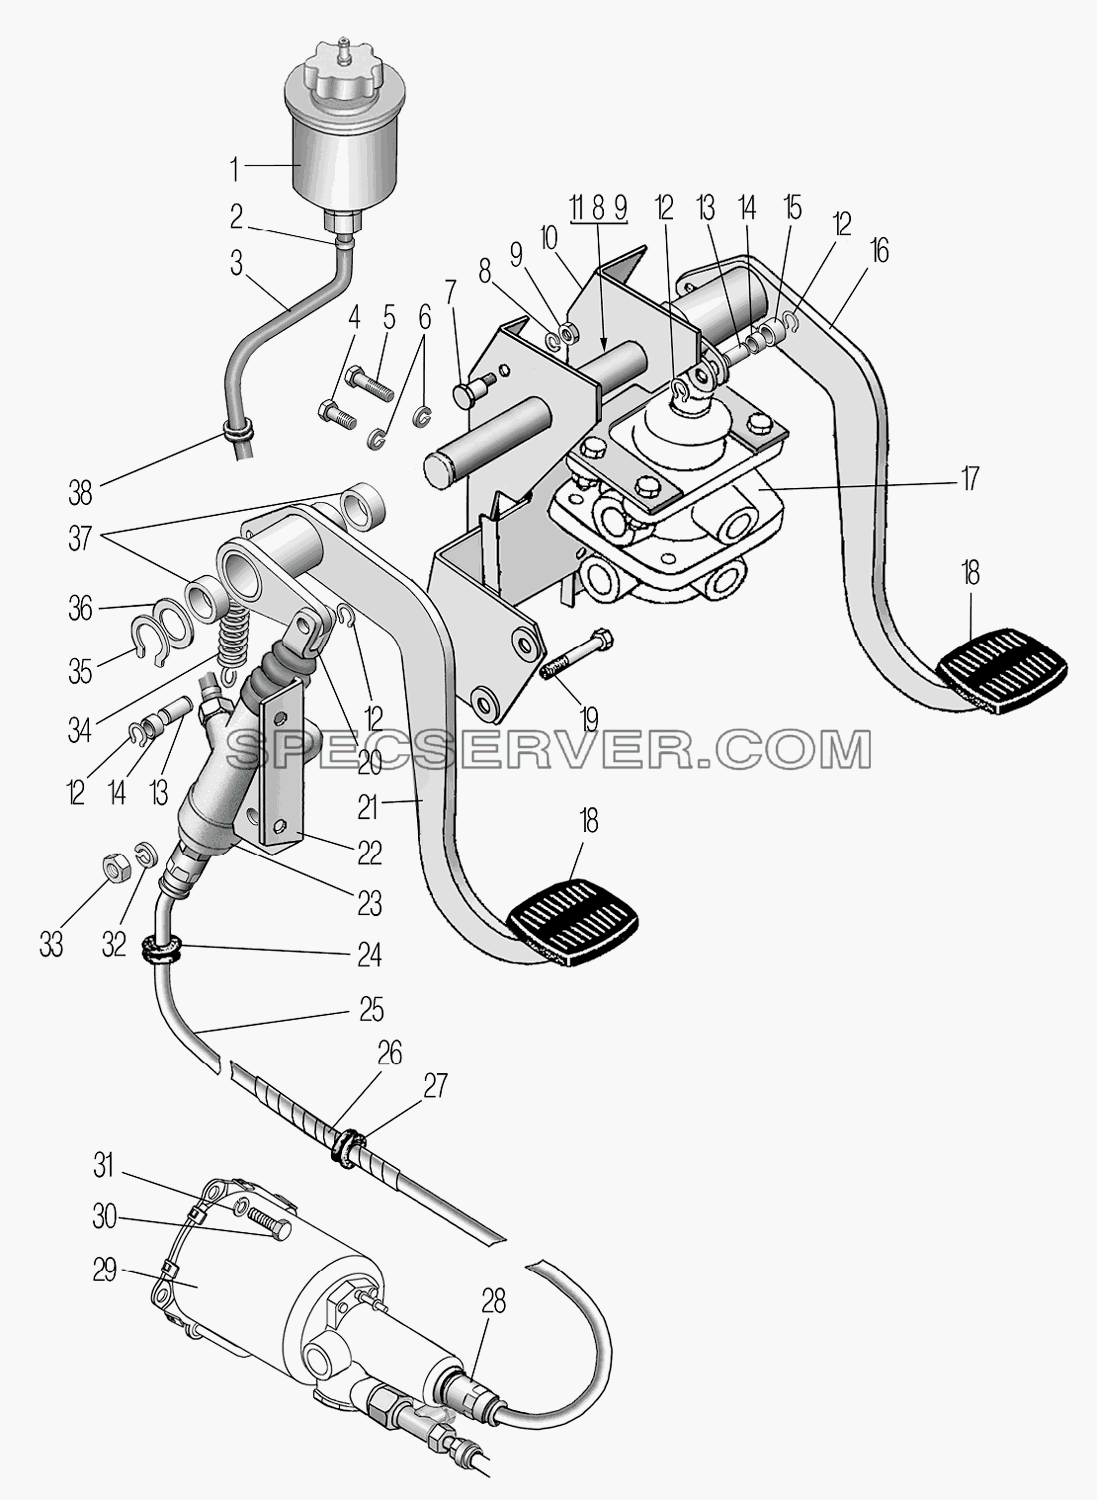 Привод педалей сцепления и тормоза для Урал-44202-3511-80М (список запасных частей)